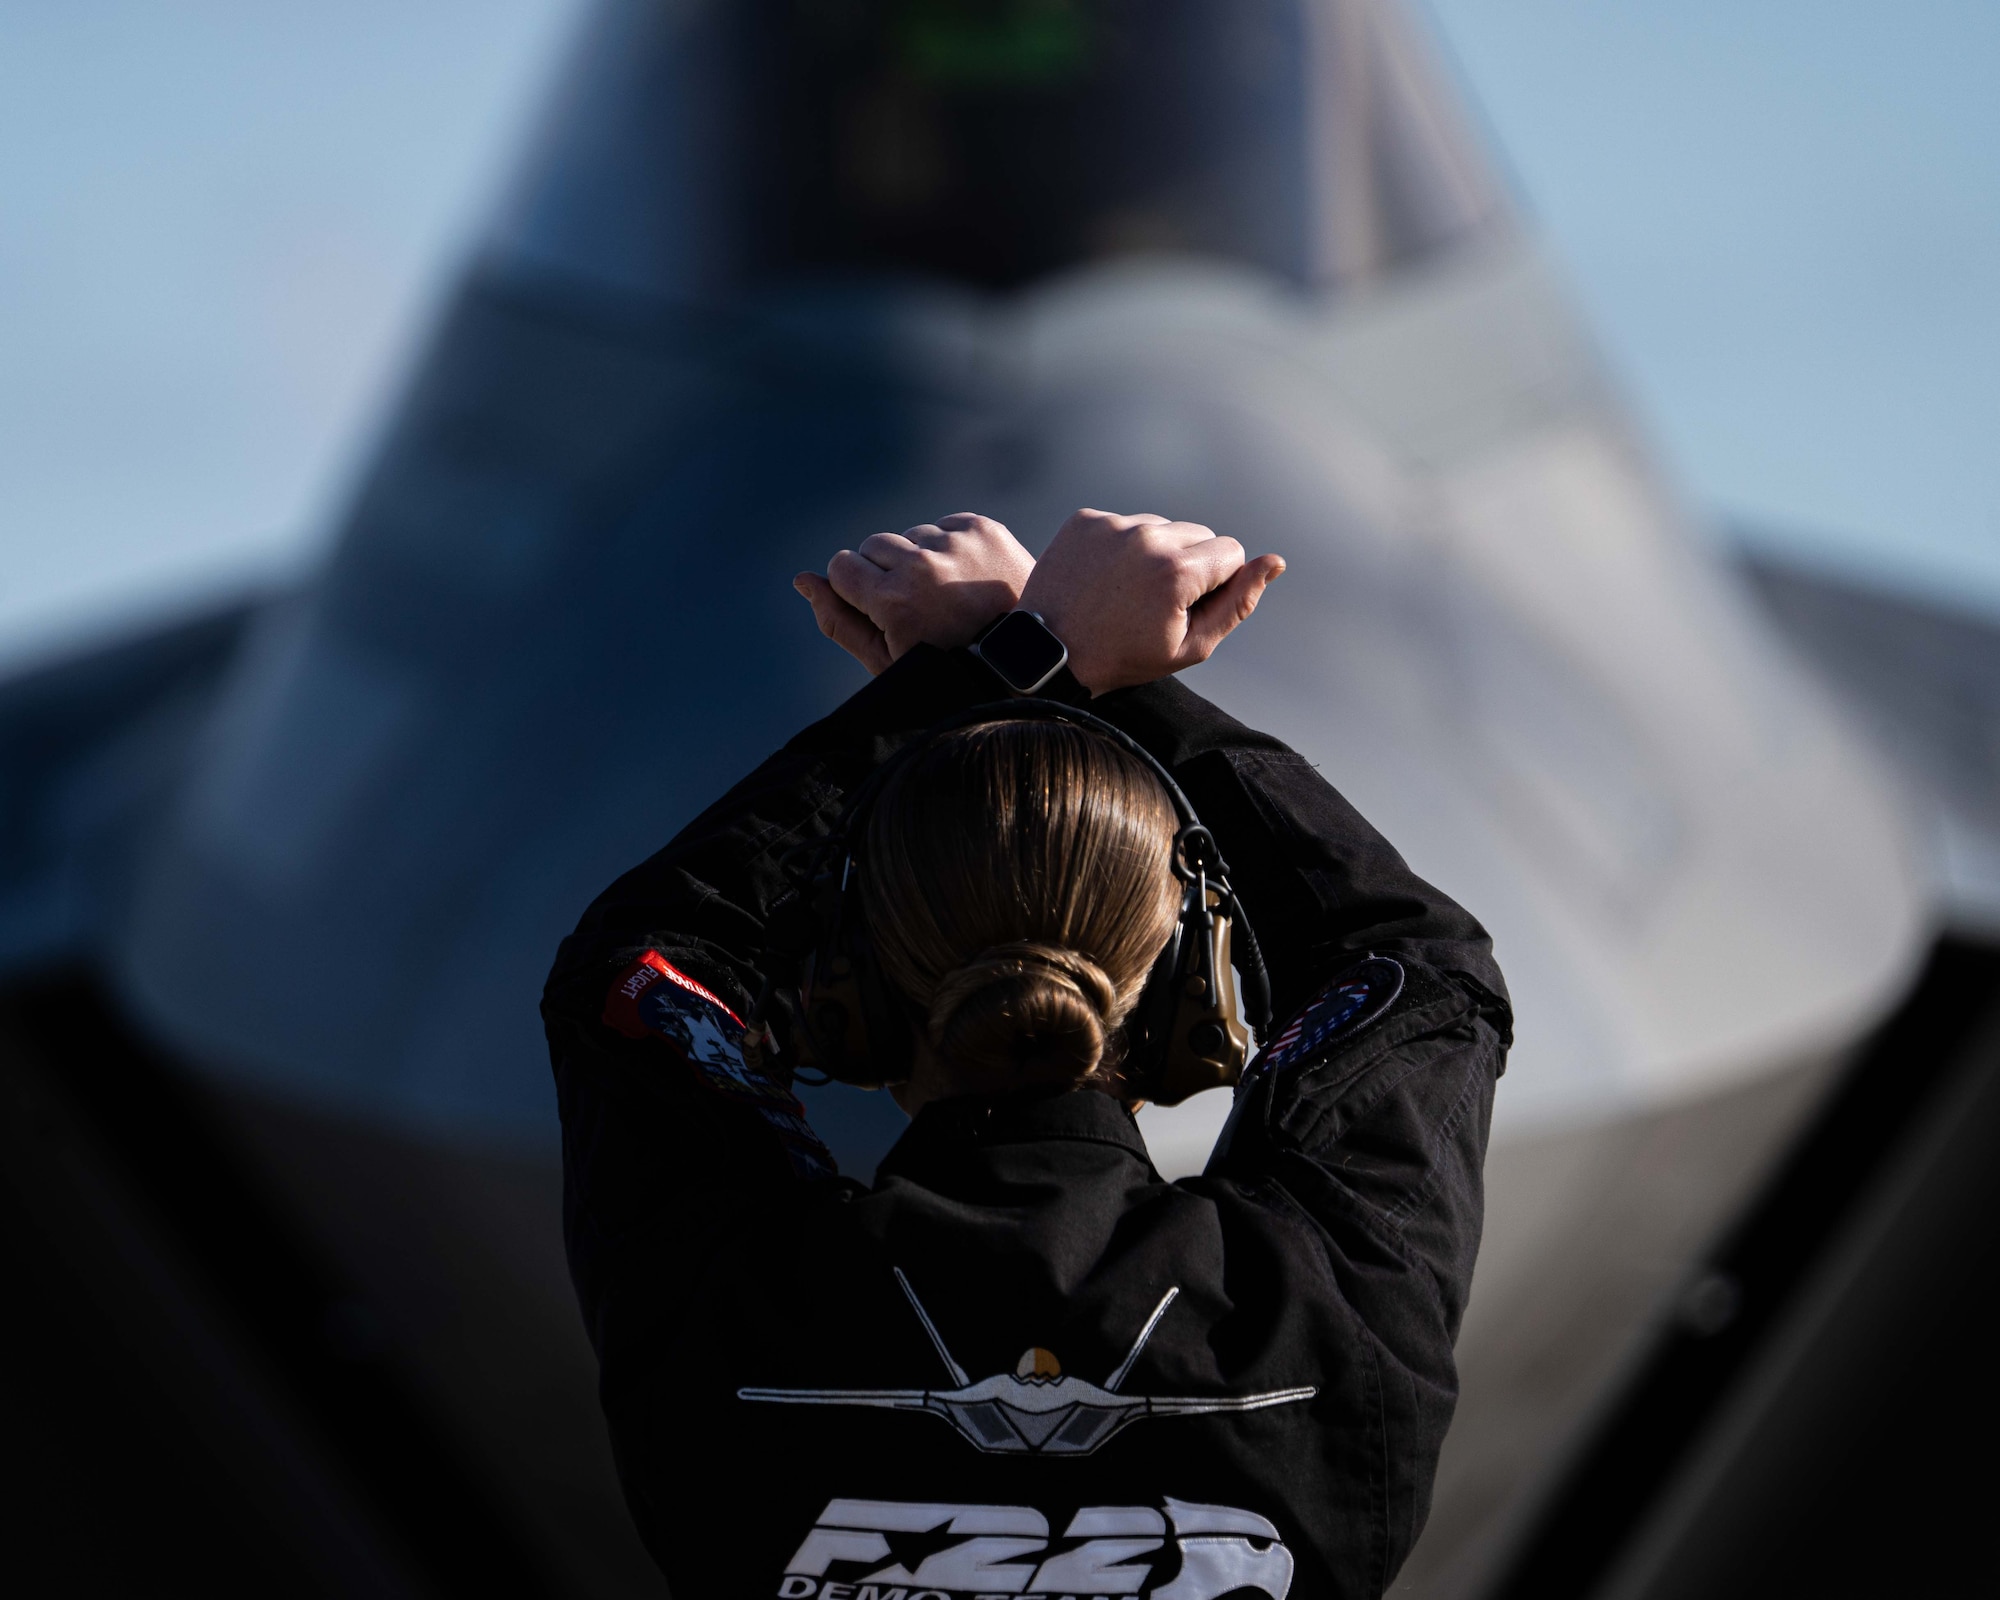 F 22 Raptor Demo Team Announces New Pilot For 2023 Air Show Season